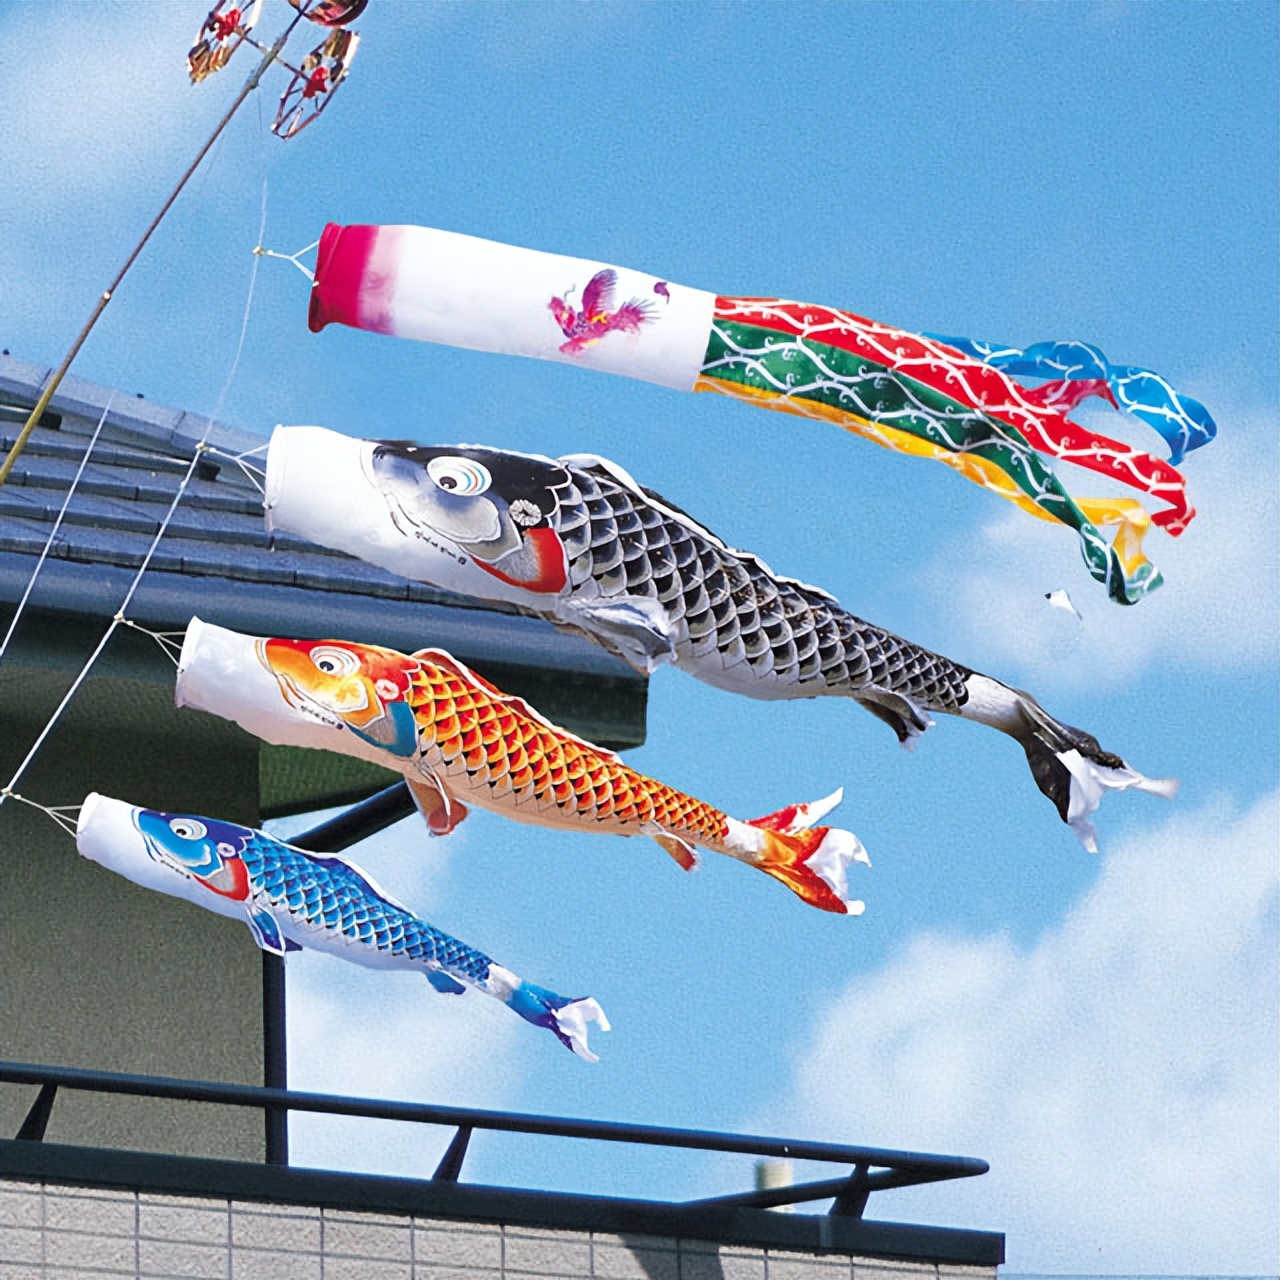 日本儿童节装饰的鲤鱼旗的由来!鲤鱼旗的装饰方法